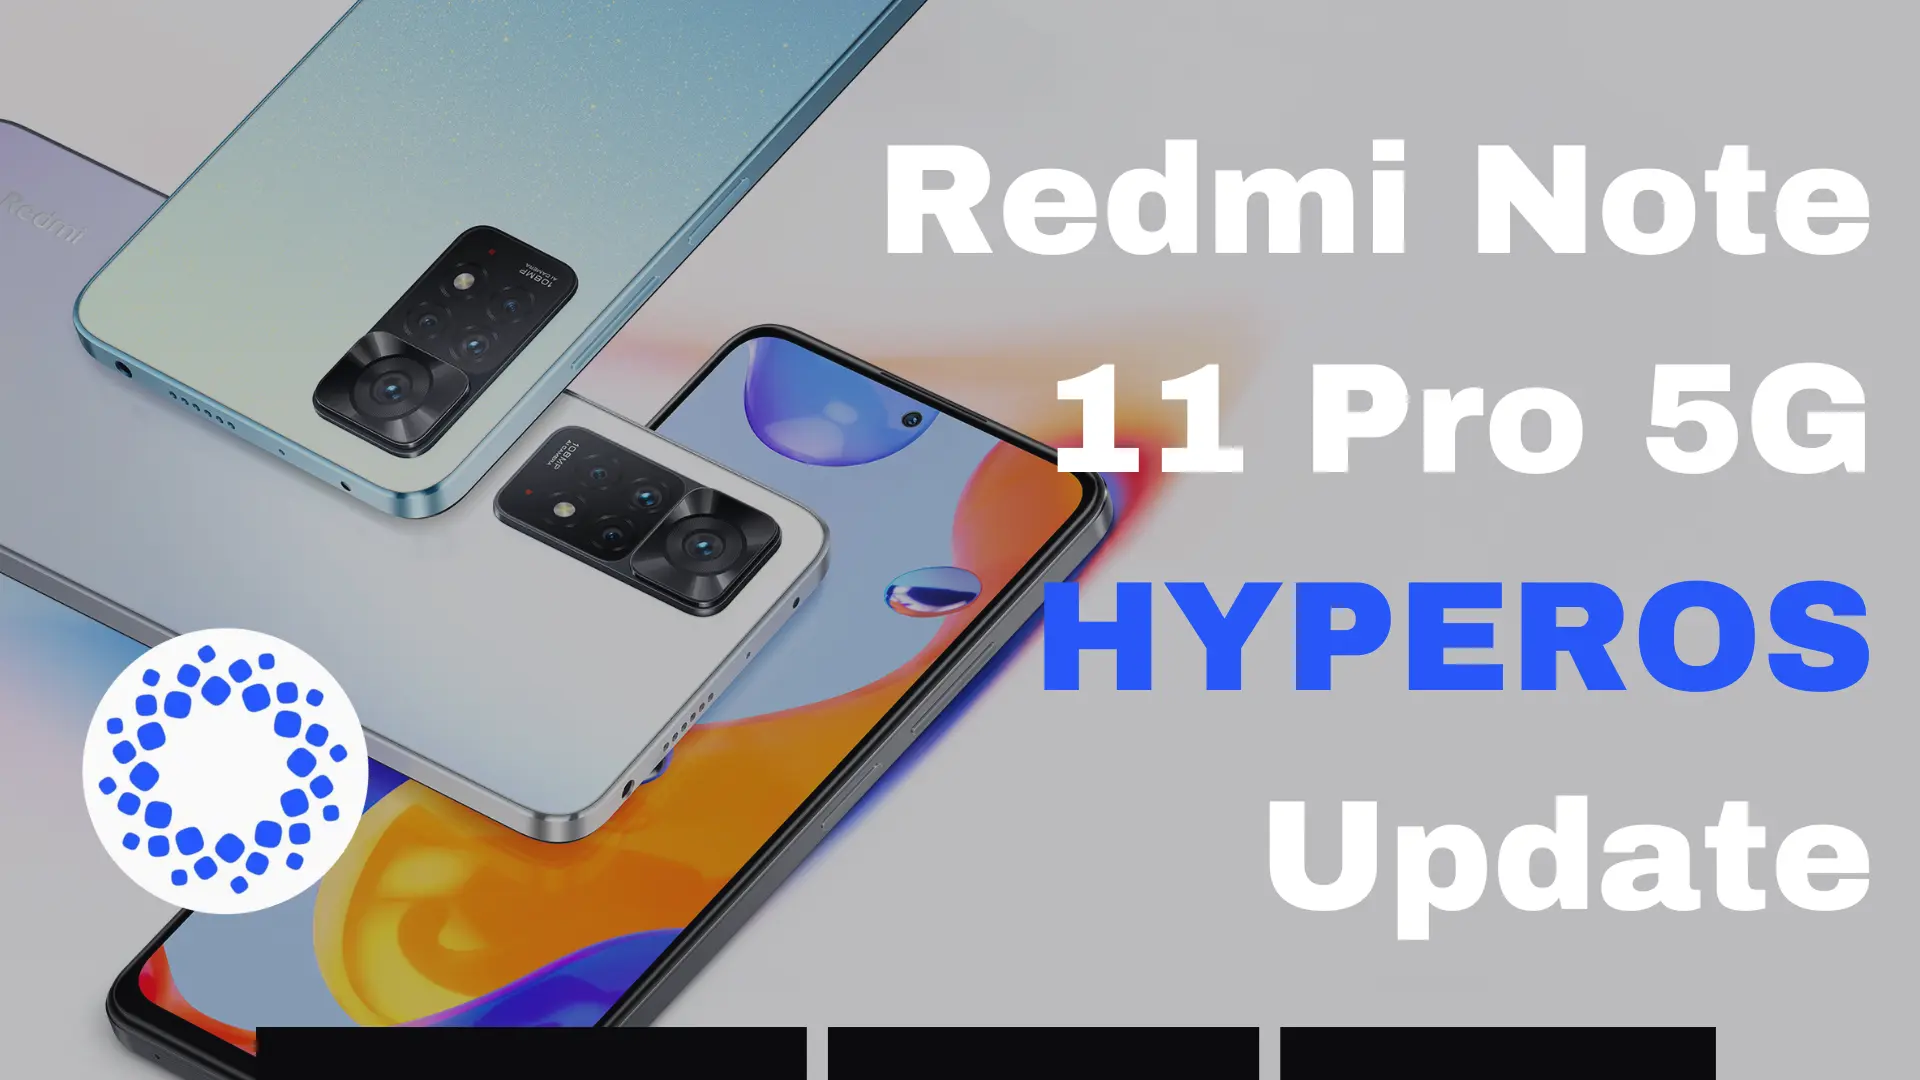 Redmi-Note-11-Pro-5G-HYPEROS-Update